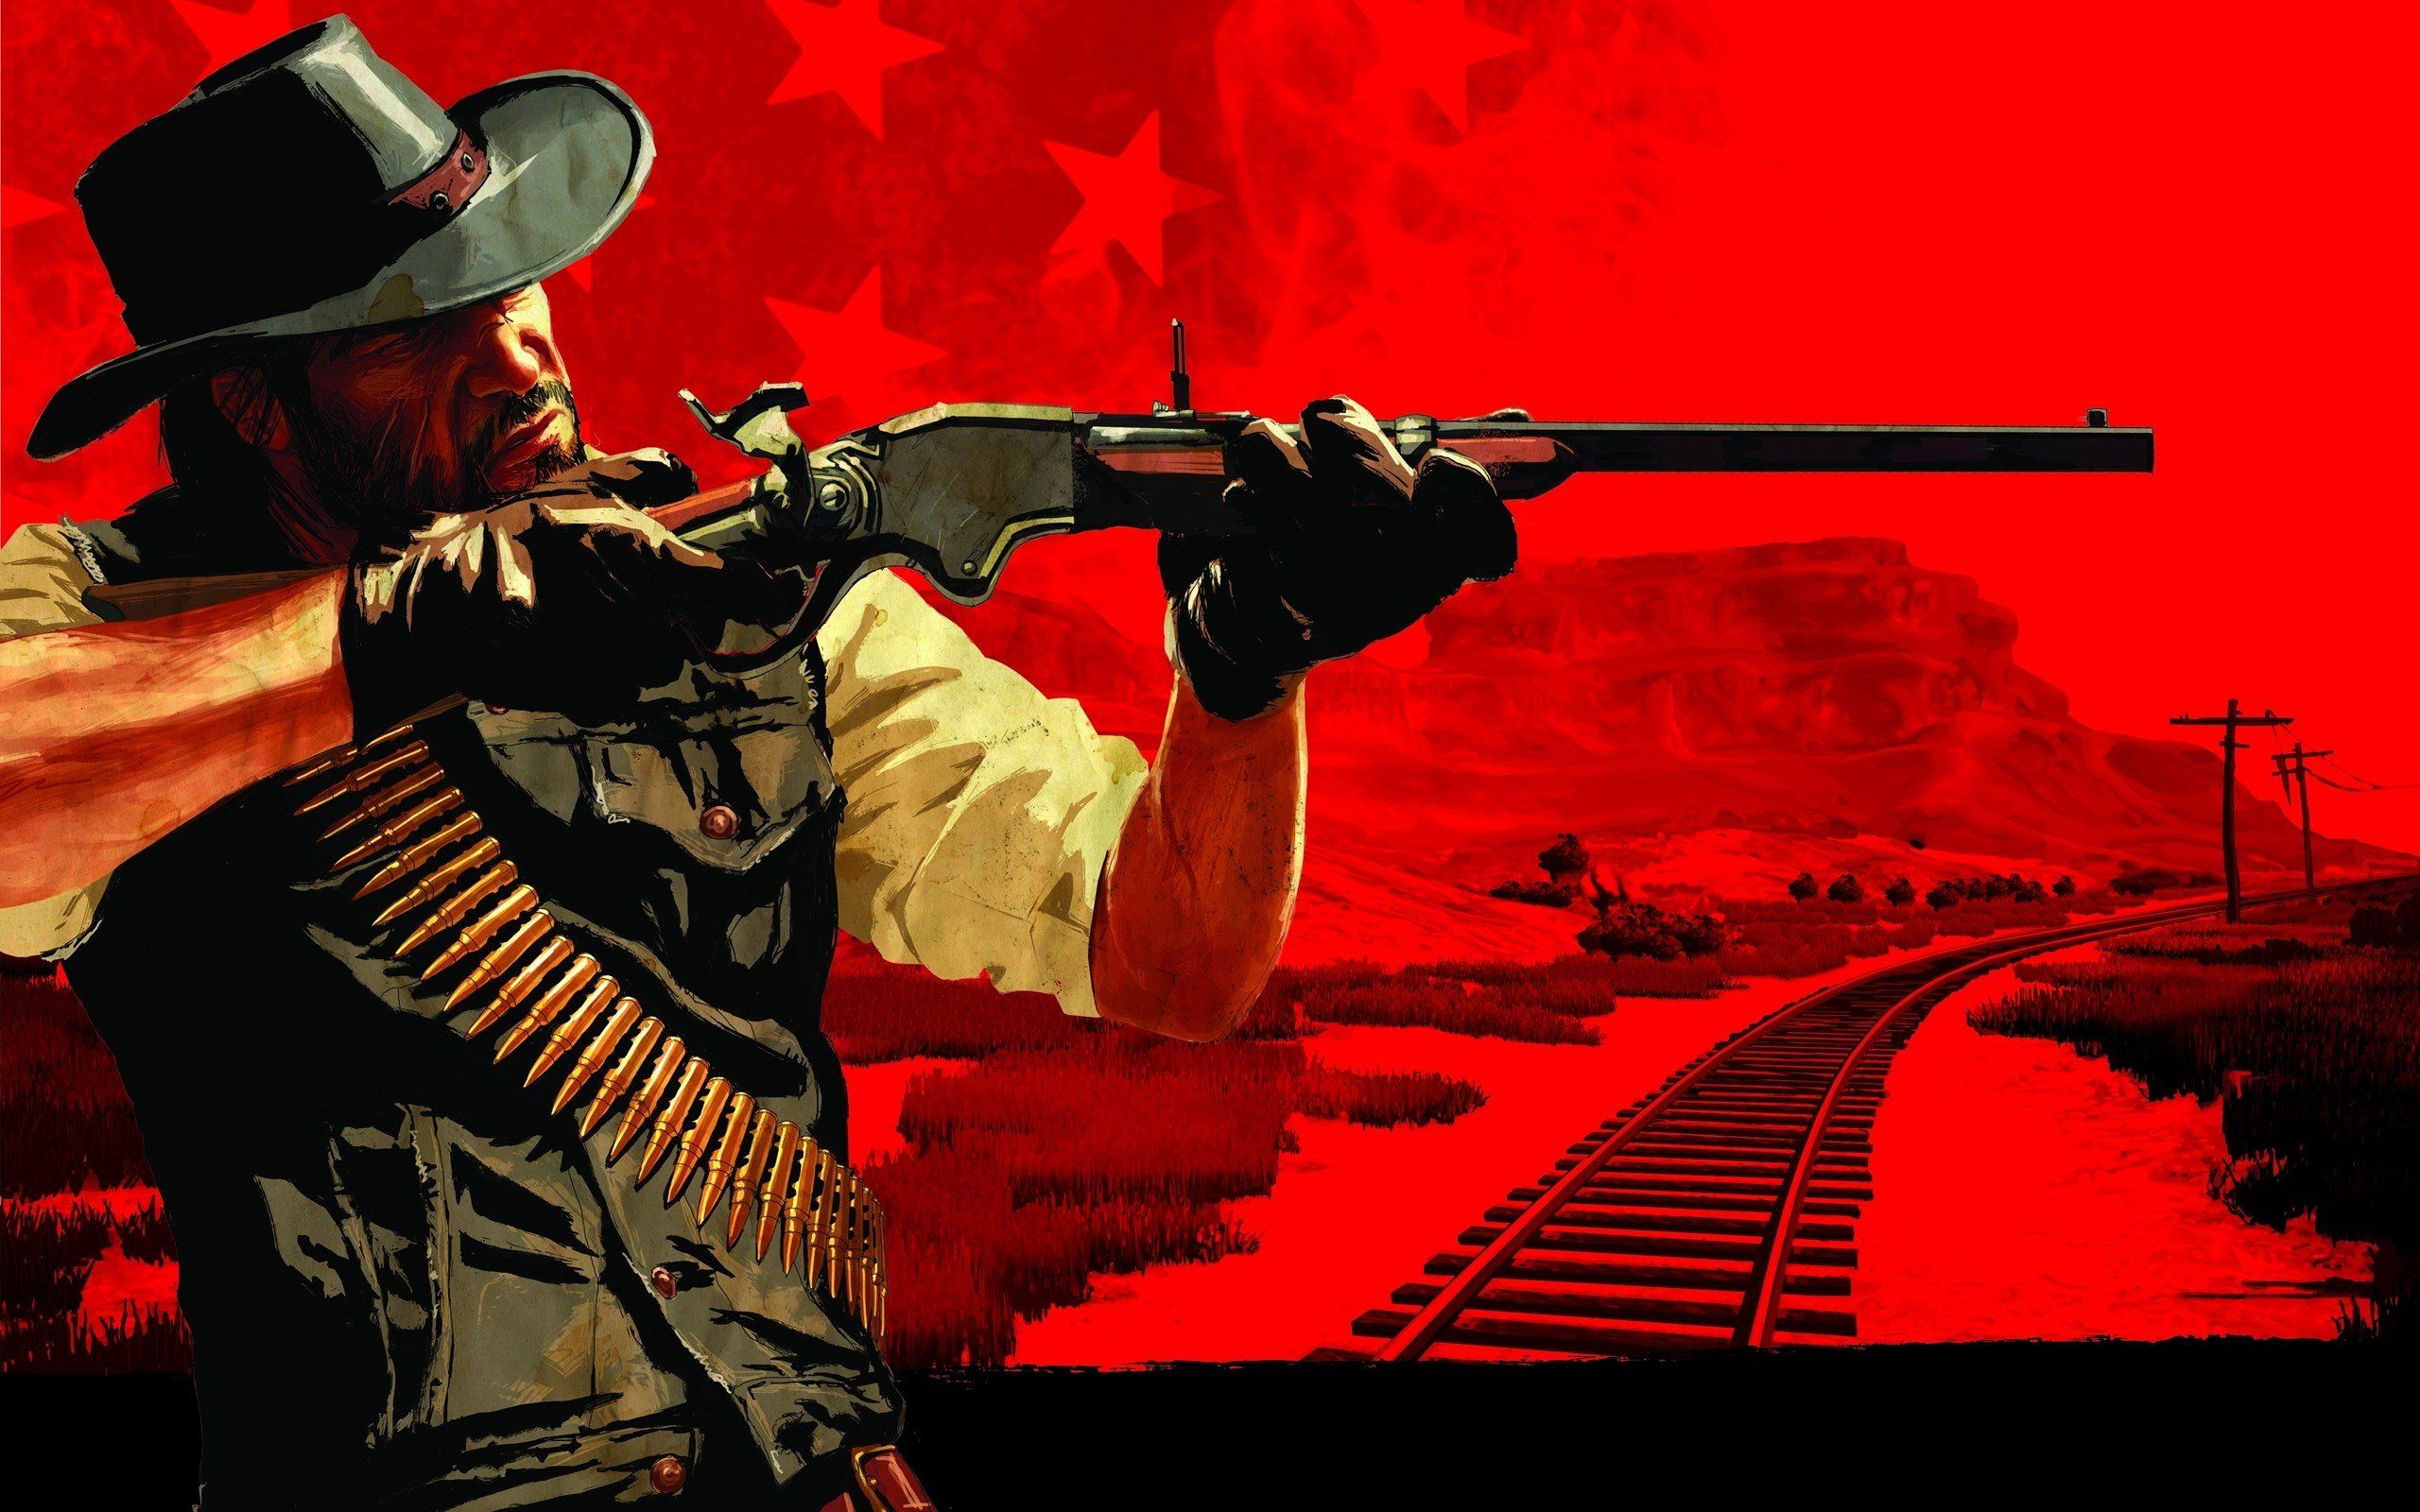 Video games western Red Dead Redemption artwork wild west ...